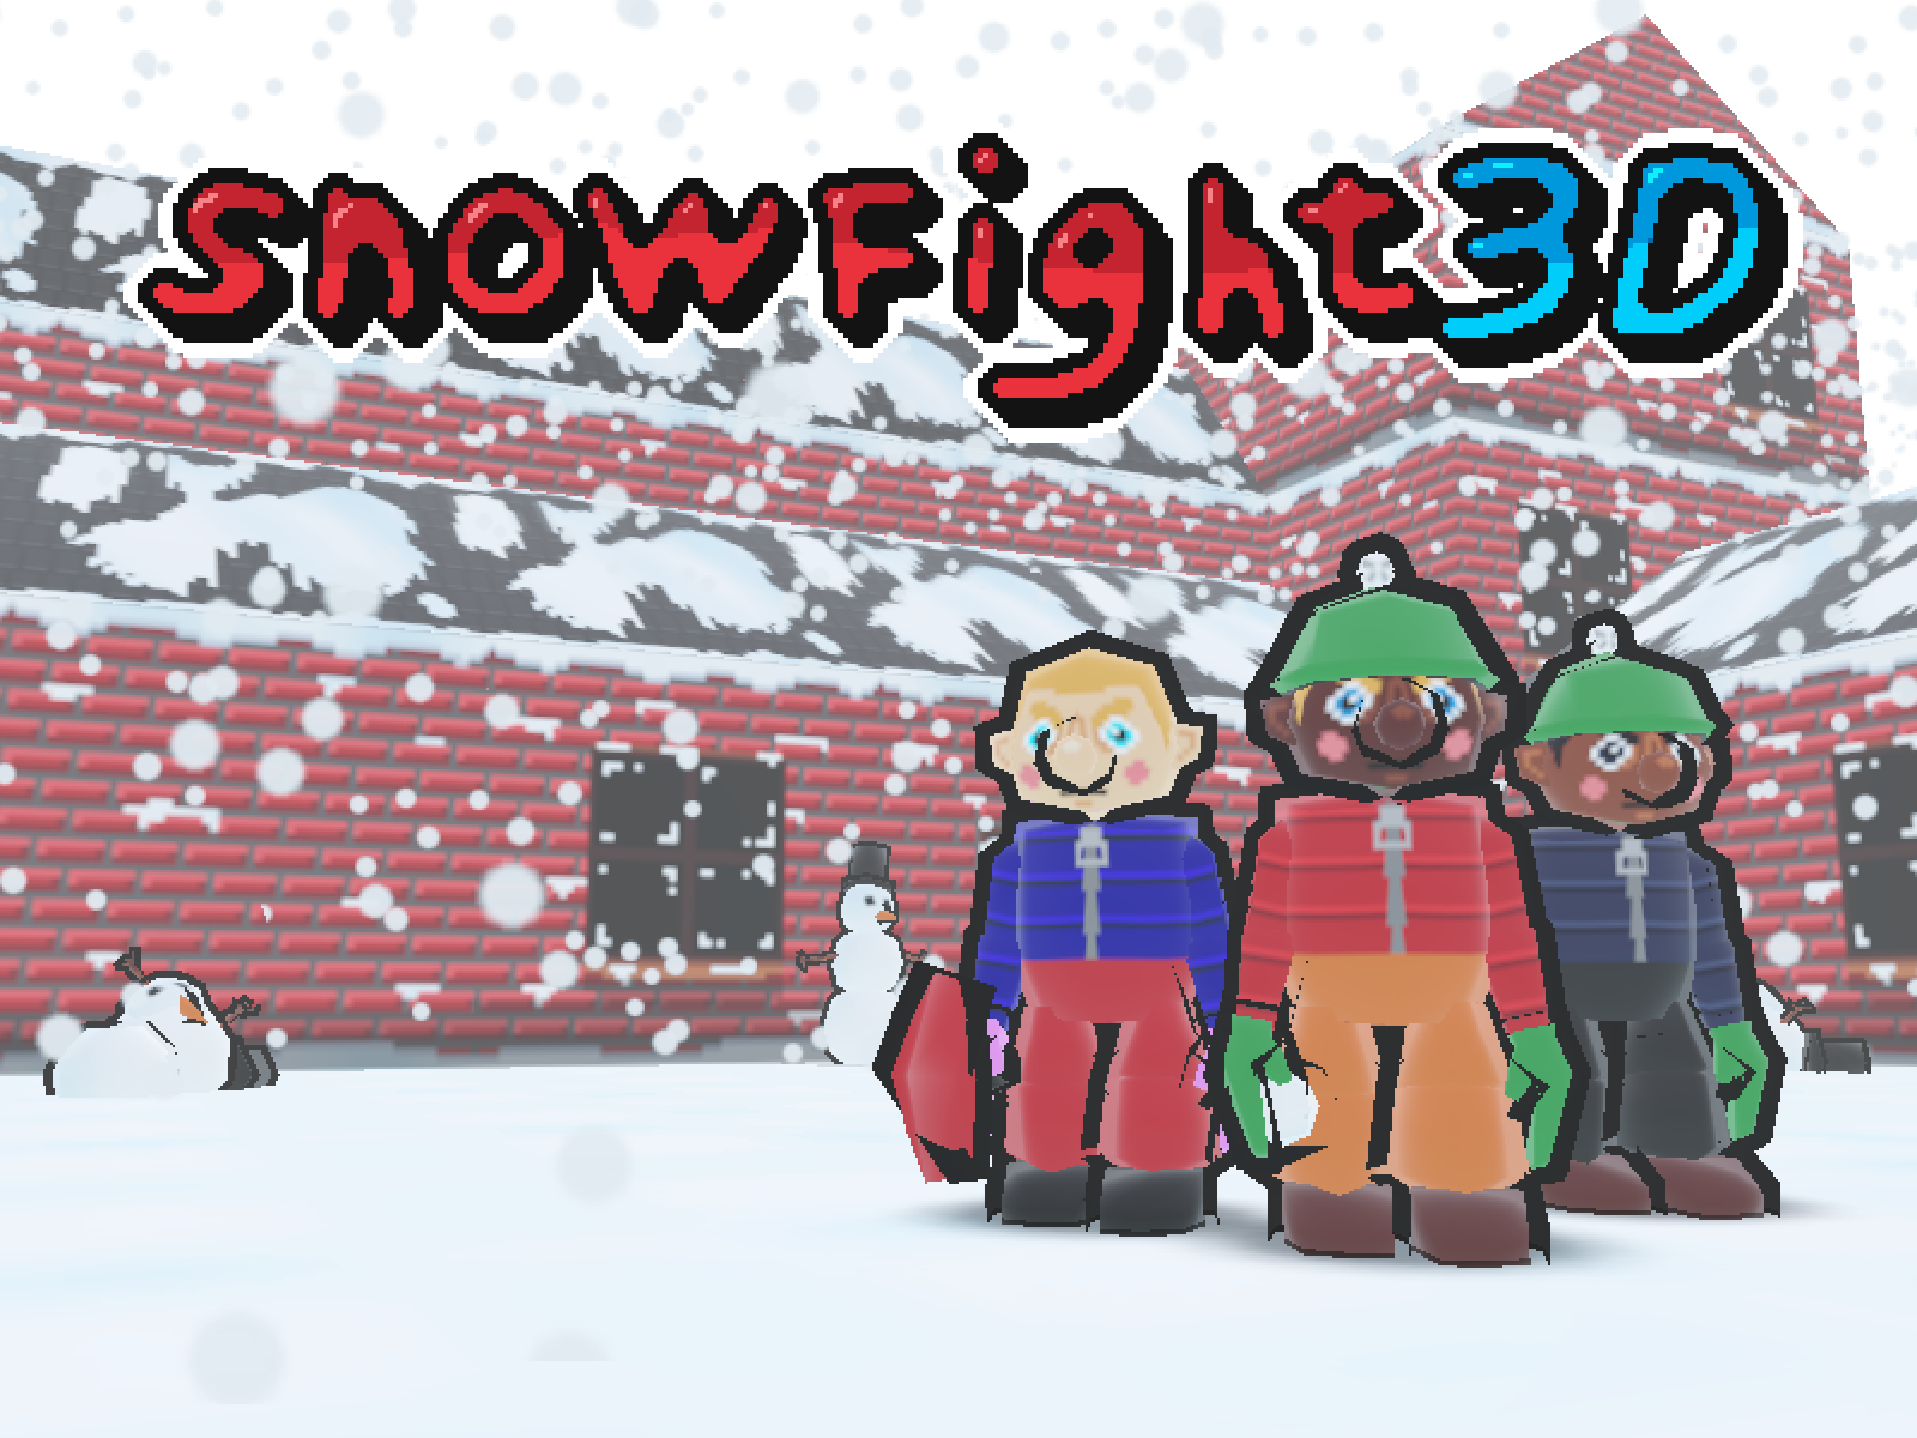 Snowfight3D